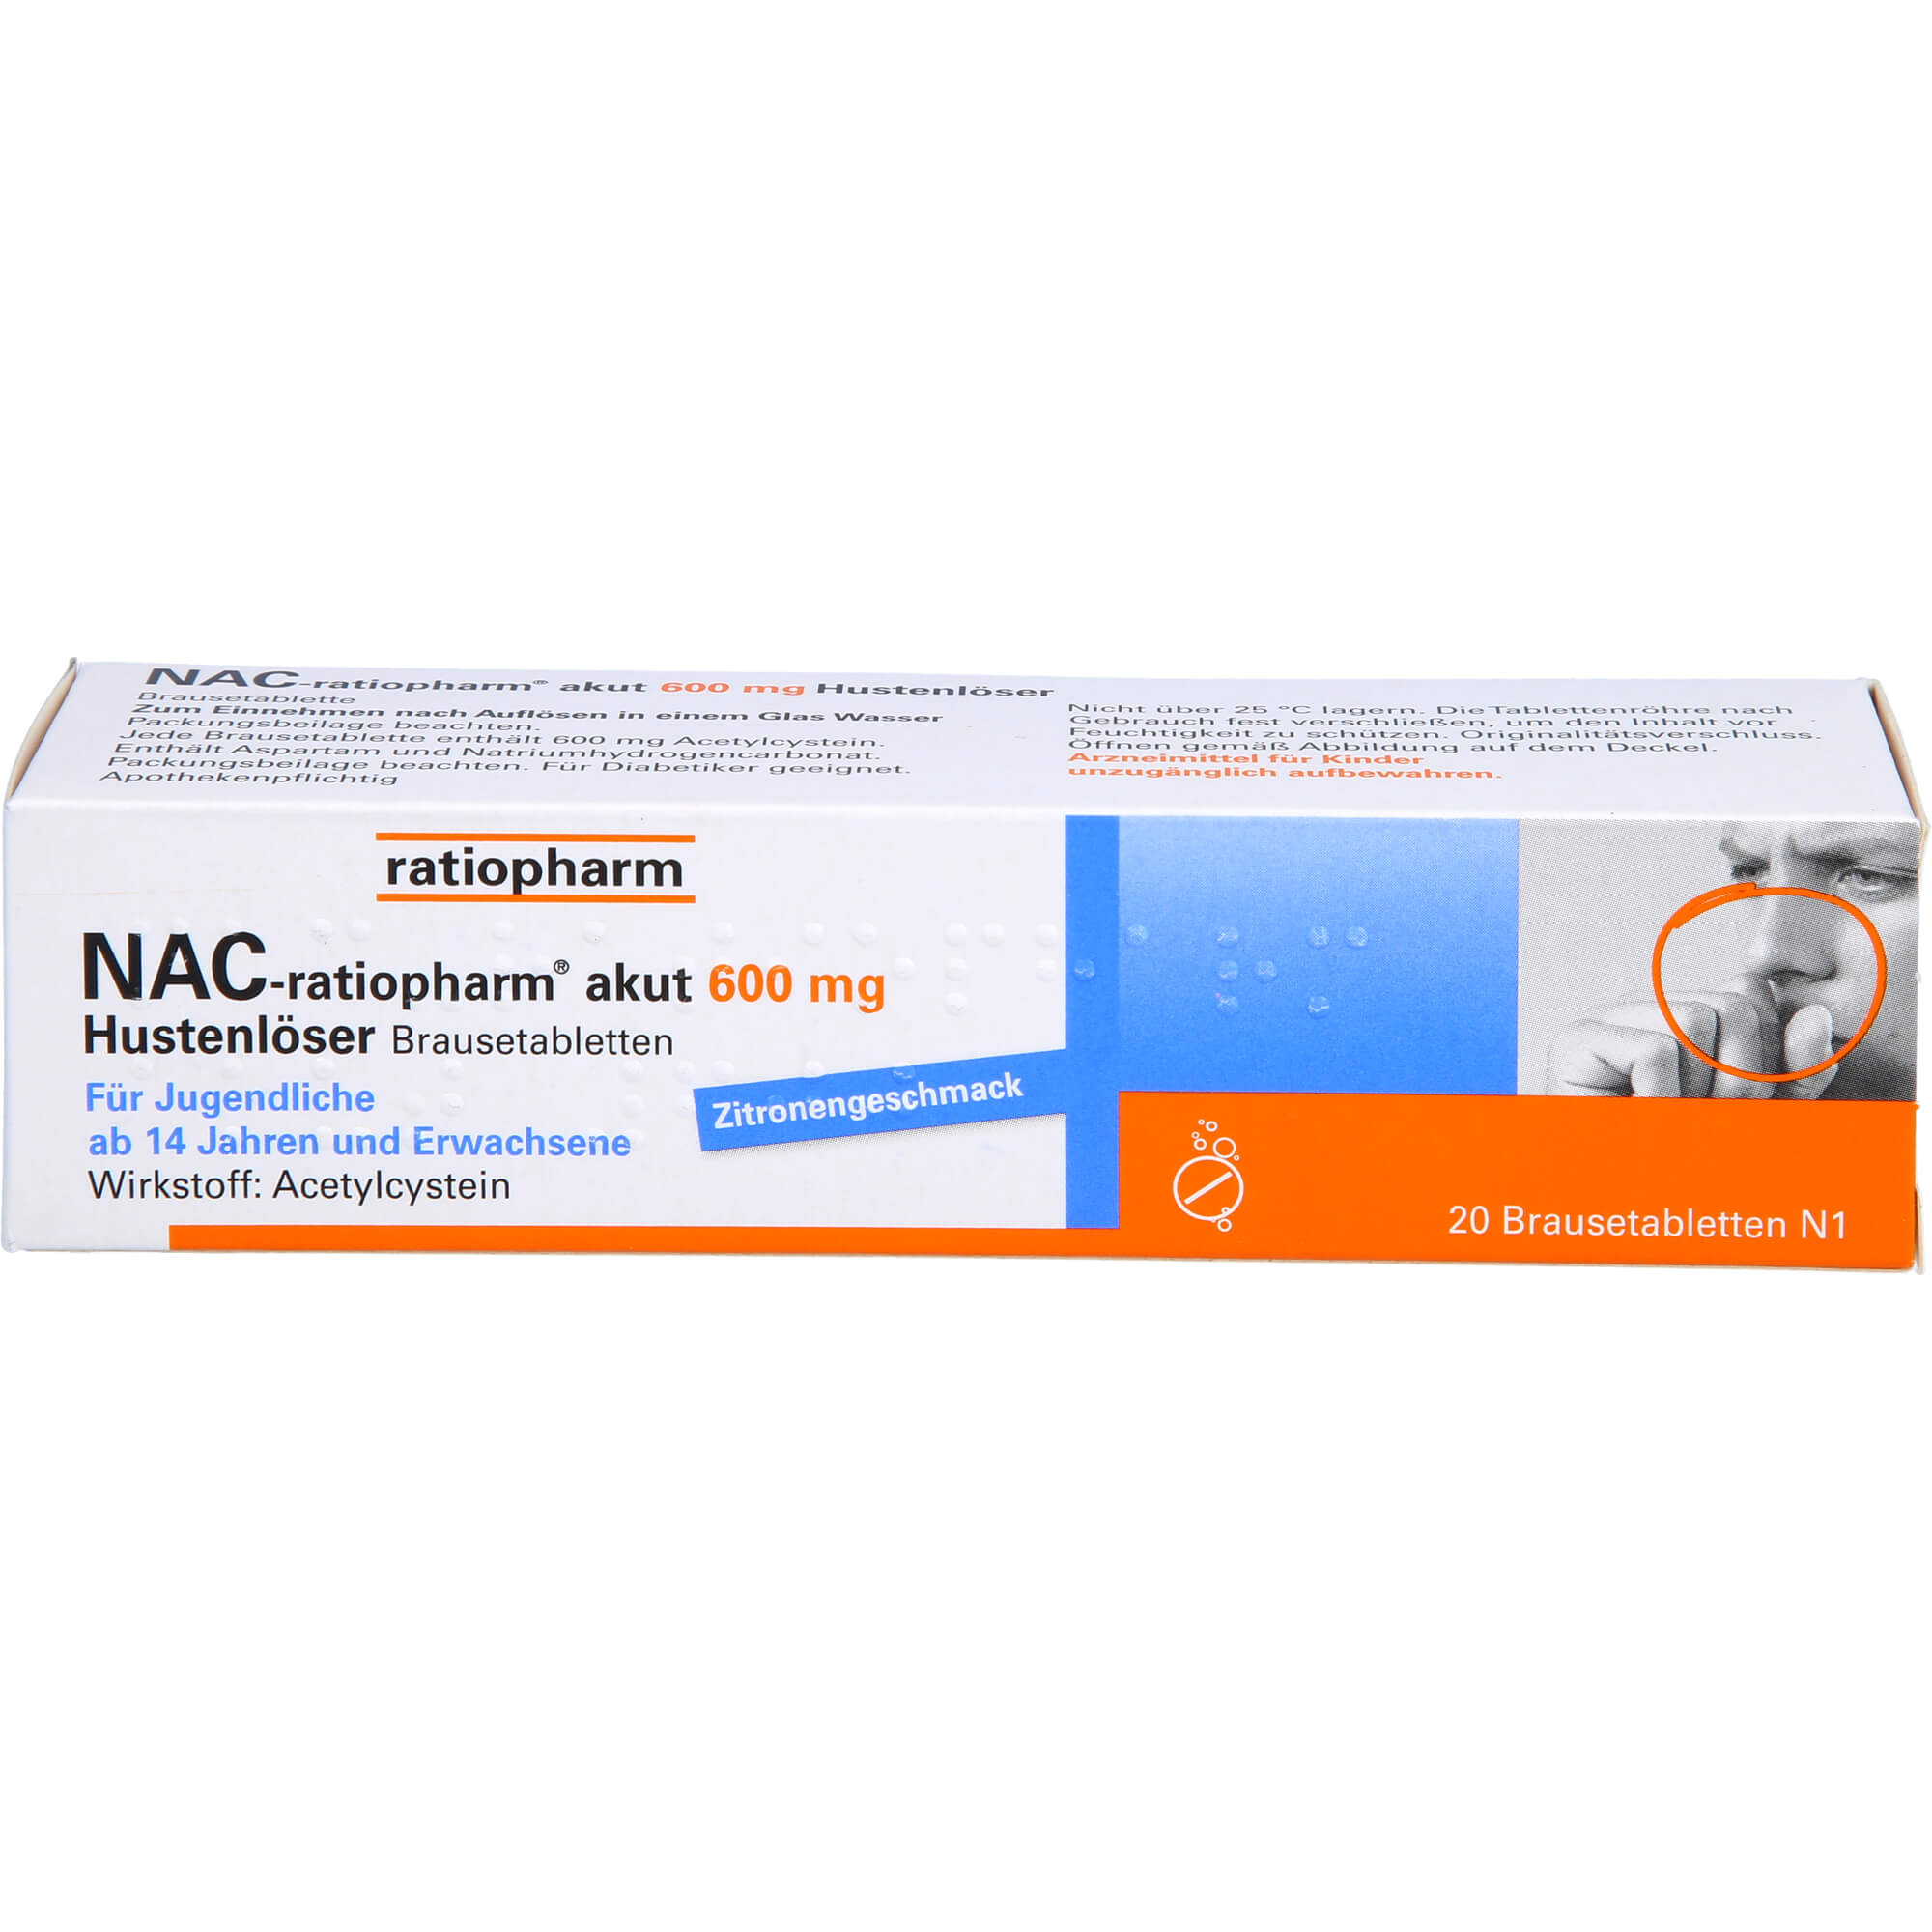 NAC-ratiopharm-akut-600-mg-Hustenloeser-Brausetabl